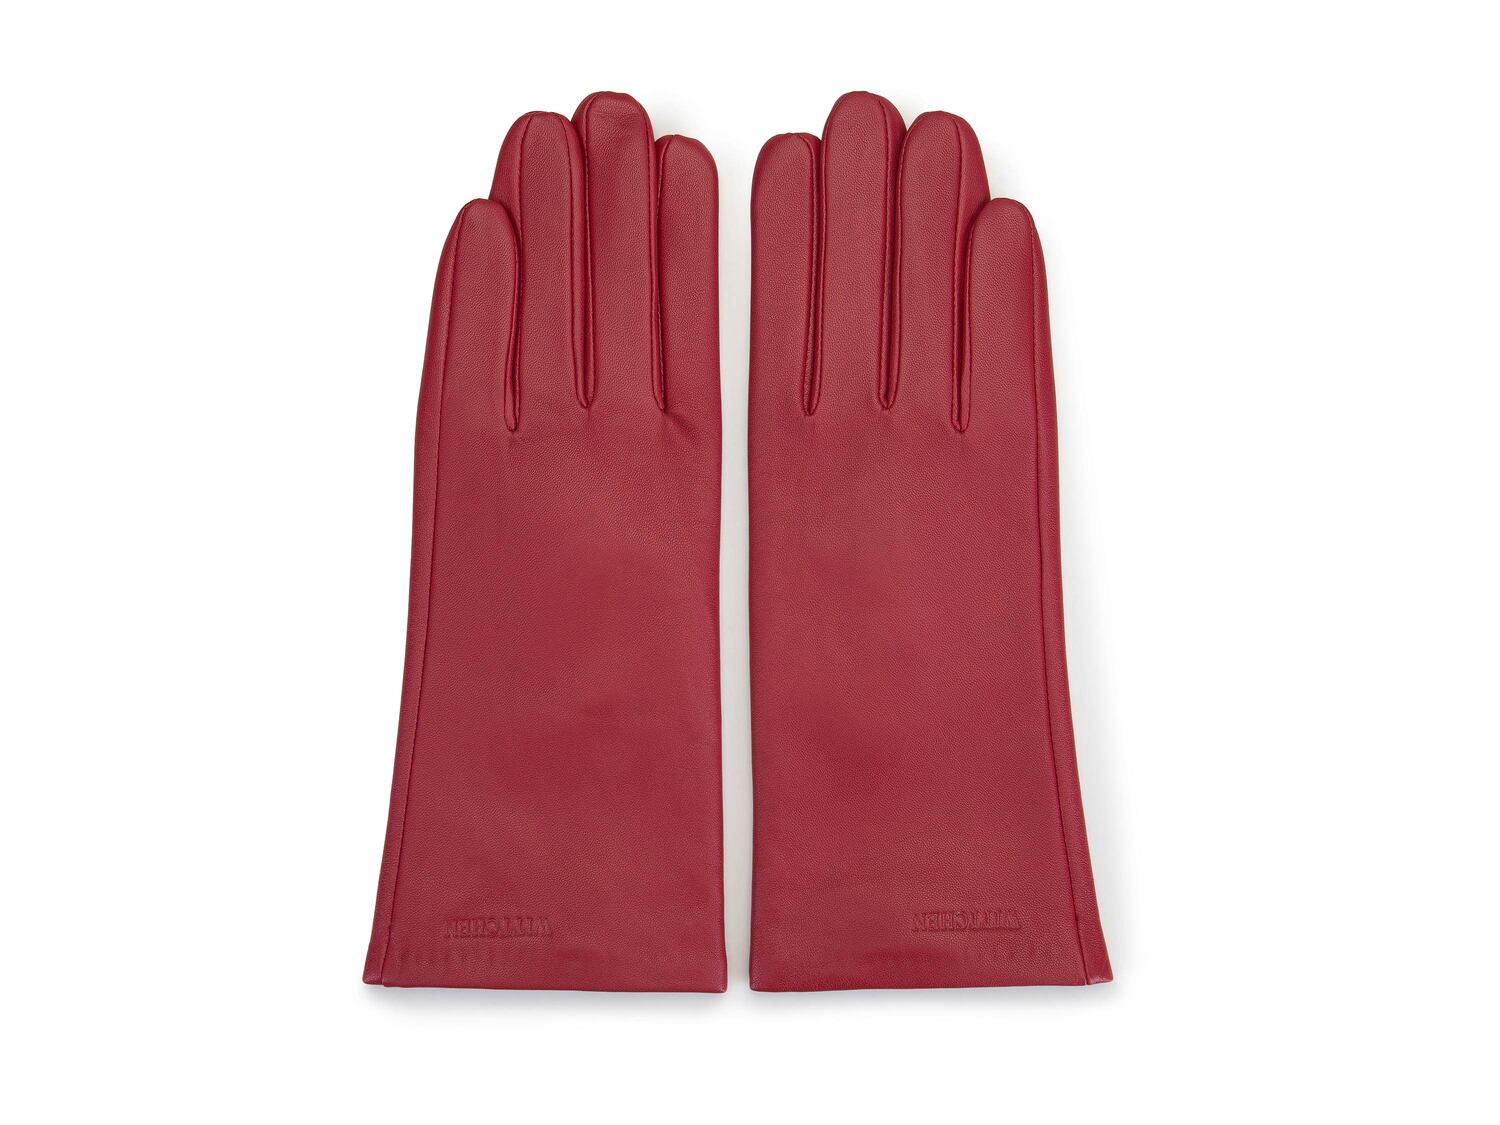 Rękawiczki damskie Wittchen, cena 89,00 PLN 
- rozmiary: S-M
- ocieplane
- materiał: ...